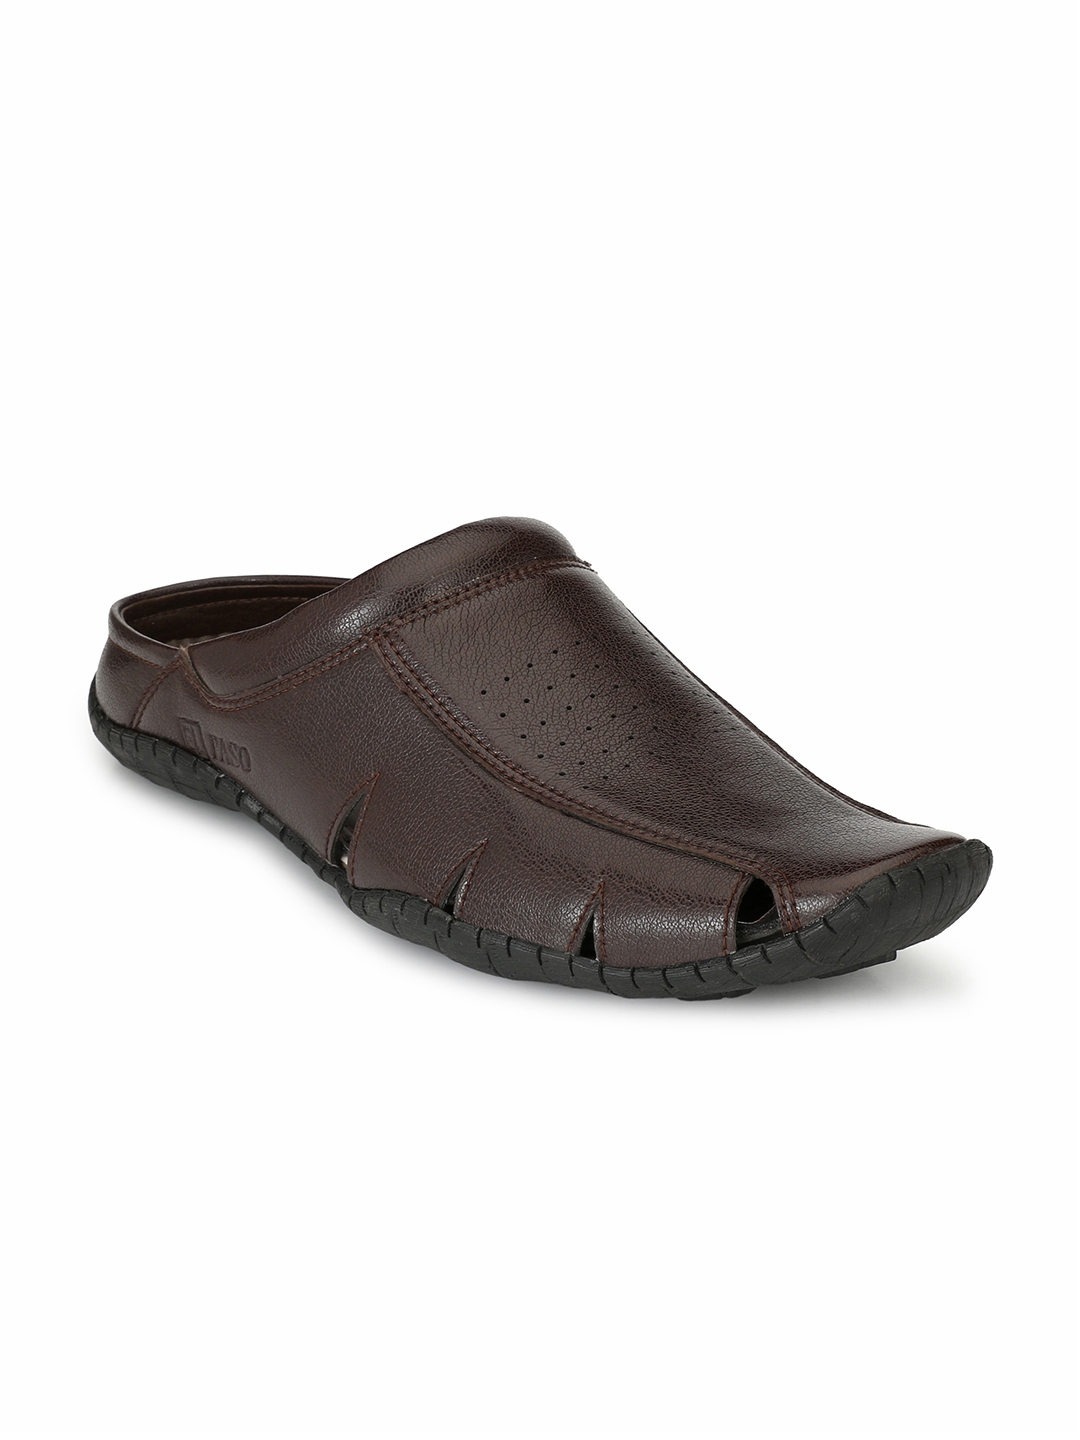 Buy El Paso Men Brown Comfort Sandals - Sandals for Men 5643931 | Myntra